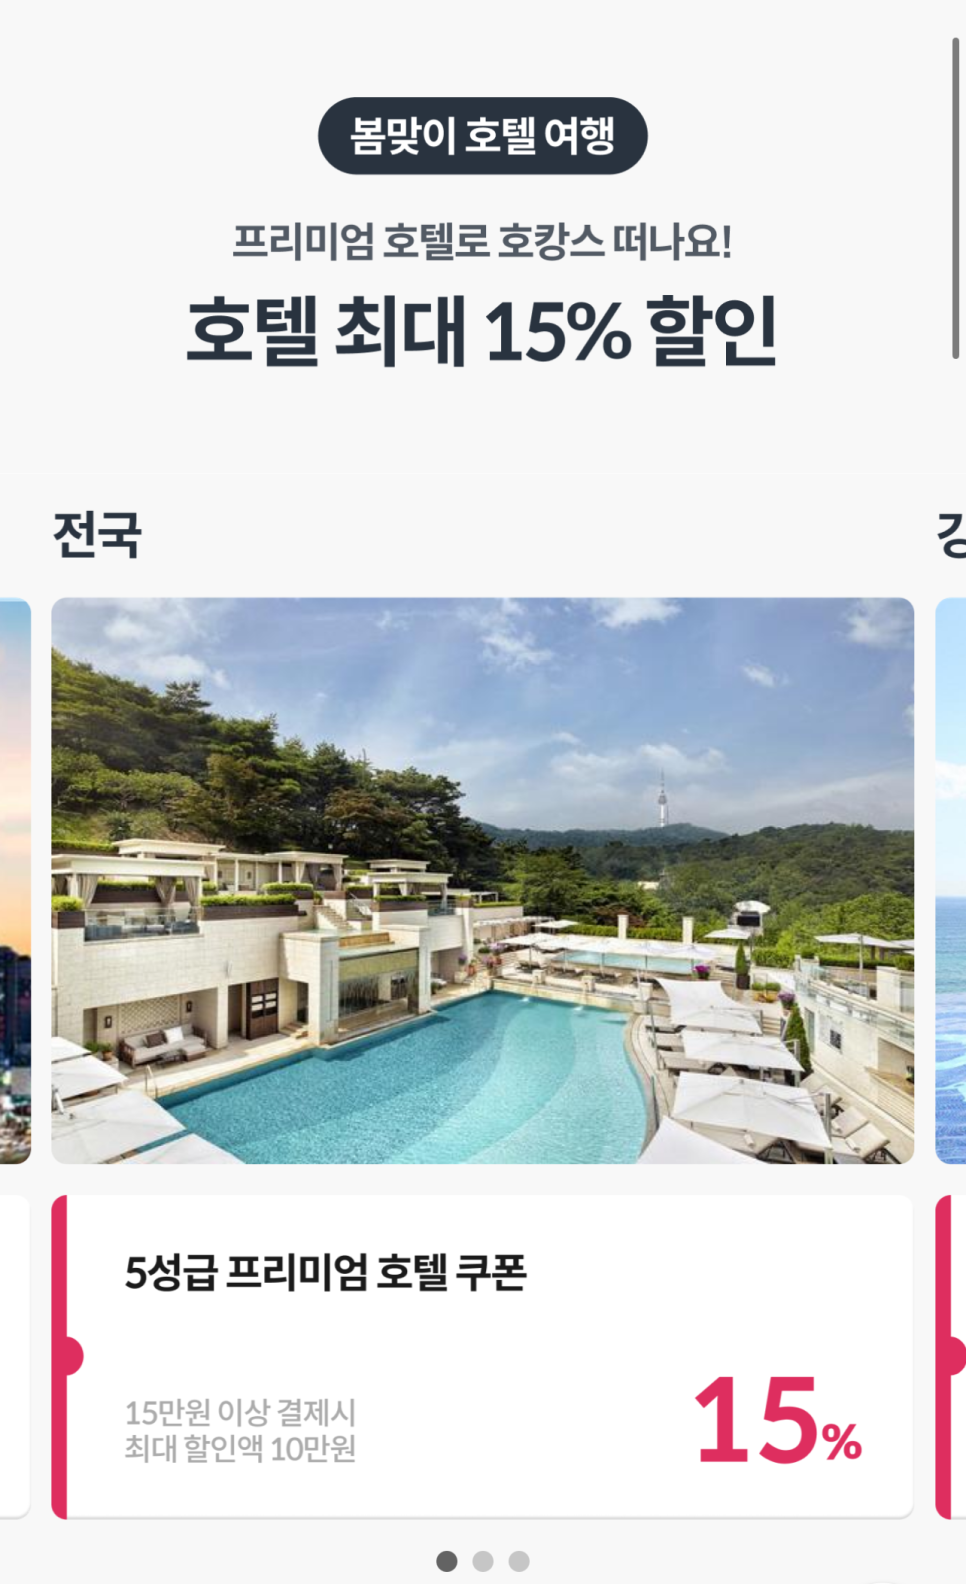 페어몬트 앰배서더 서울 호텔 조식 예약 야놀자 할인특가 쿠폰